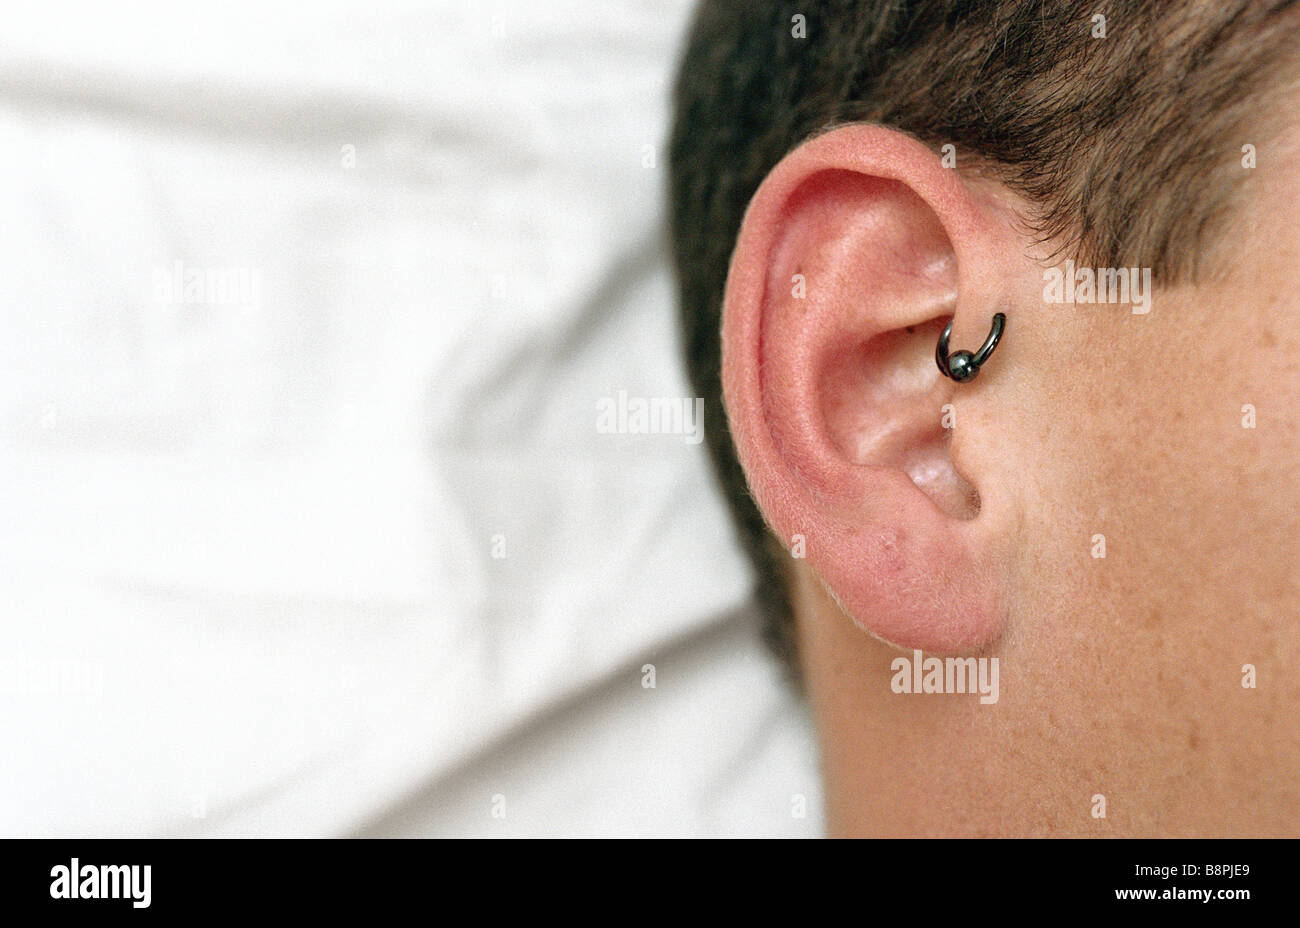 Jeune homme avec helix avant le perçage des oreilles, close-up Banque D'Images